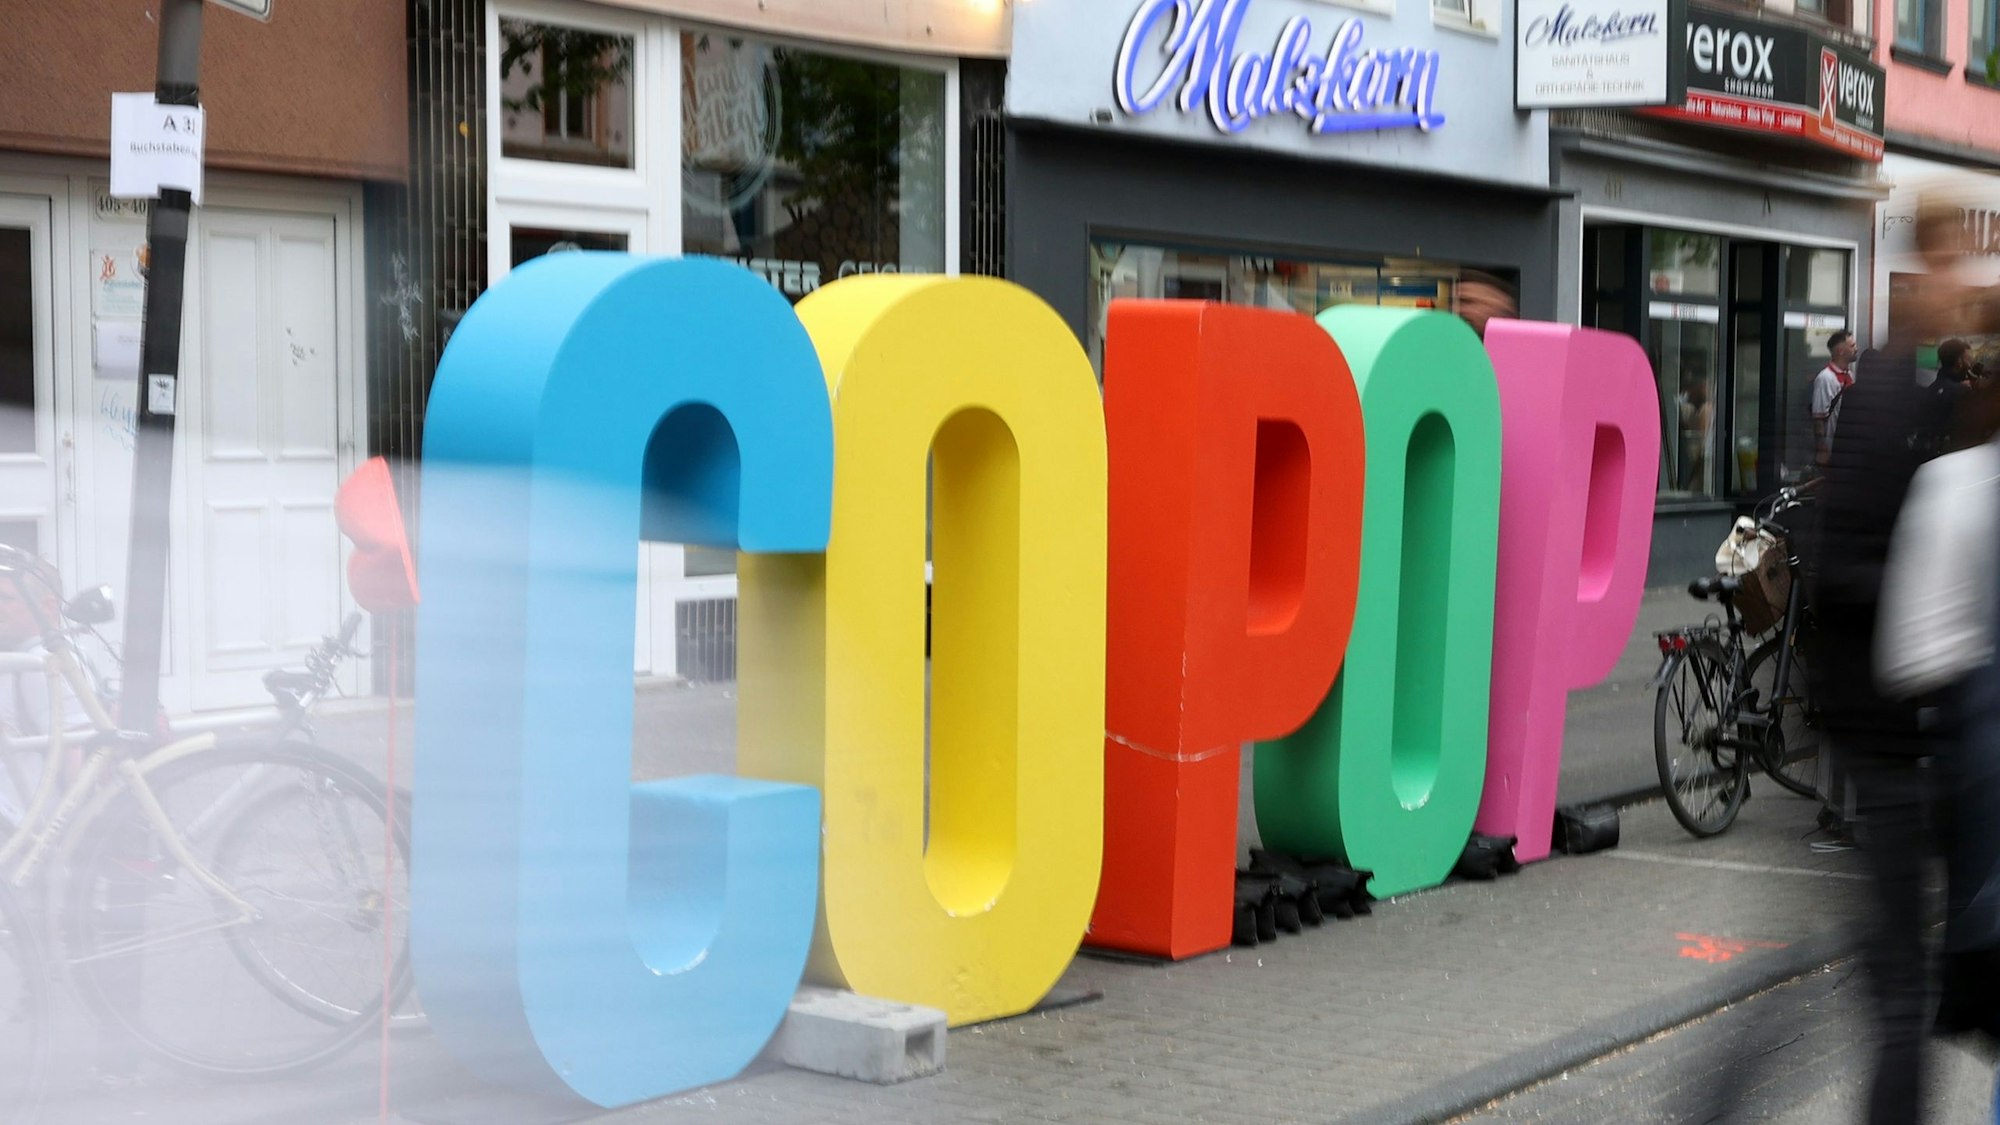 c/o Pop steht in großen Buchstaben an der Venloer Straße. (Symbolbild)